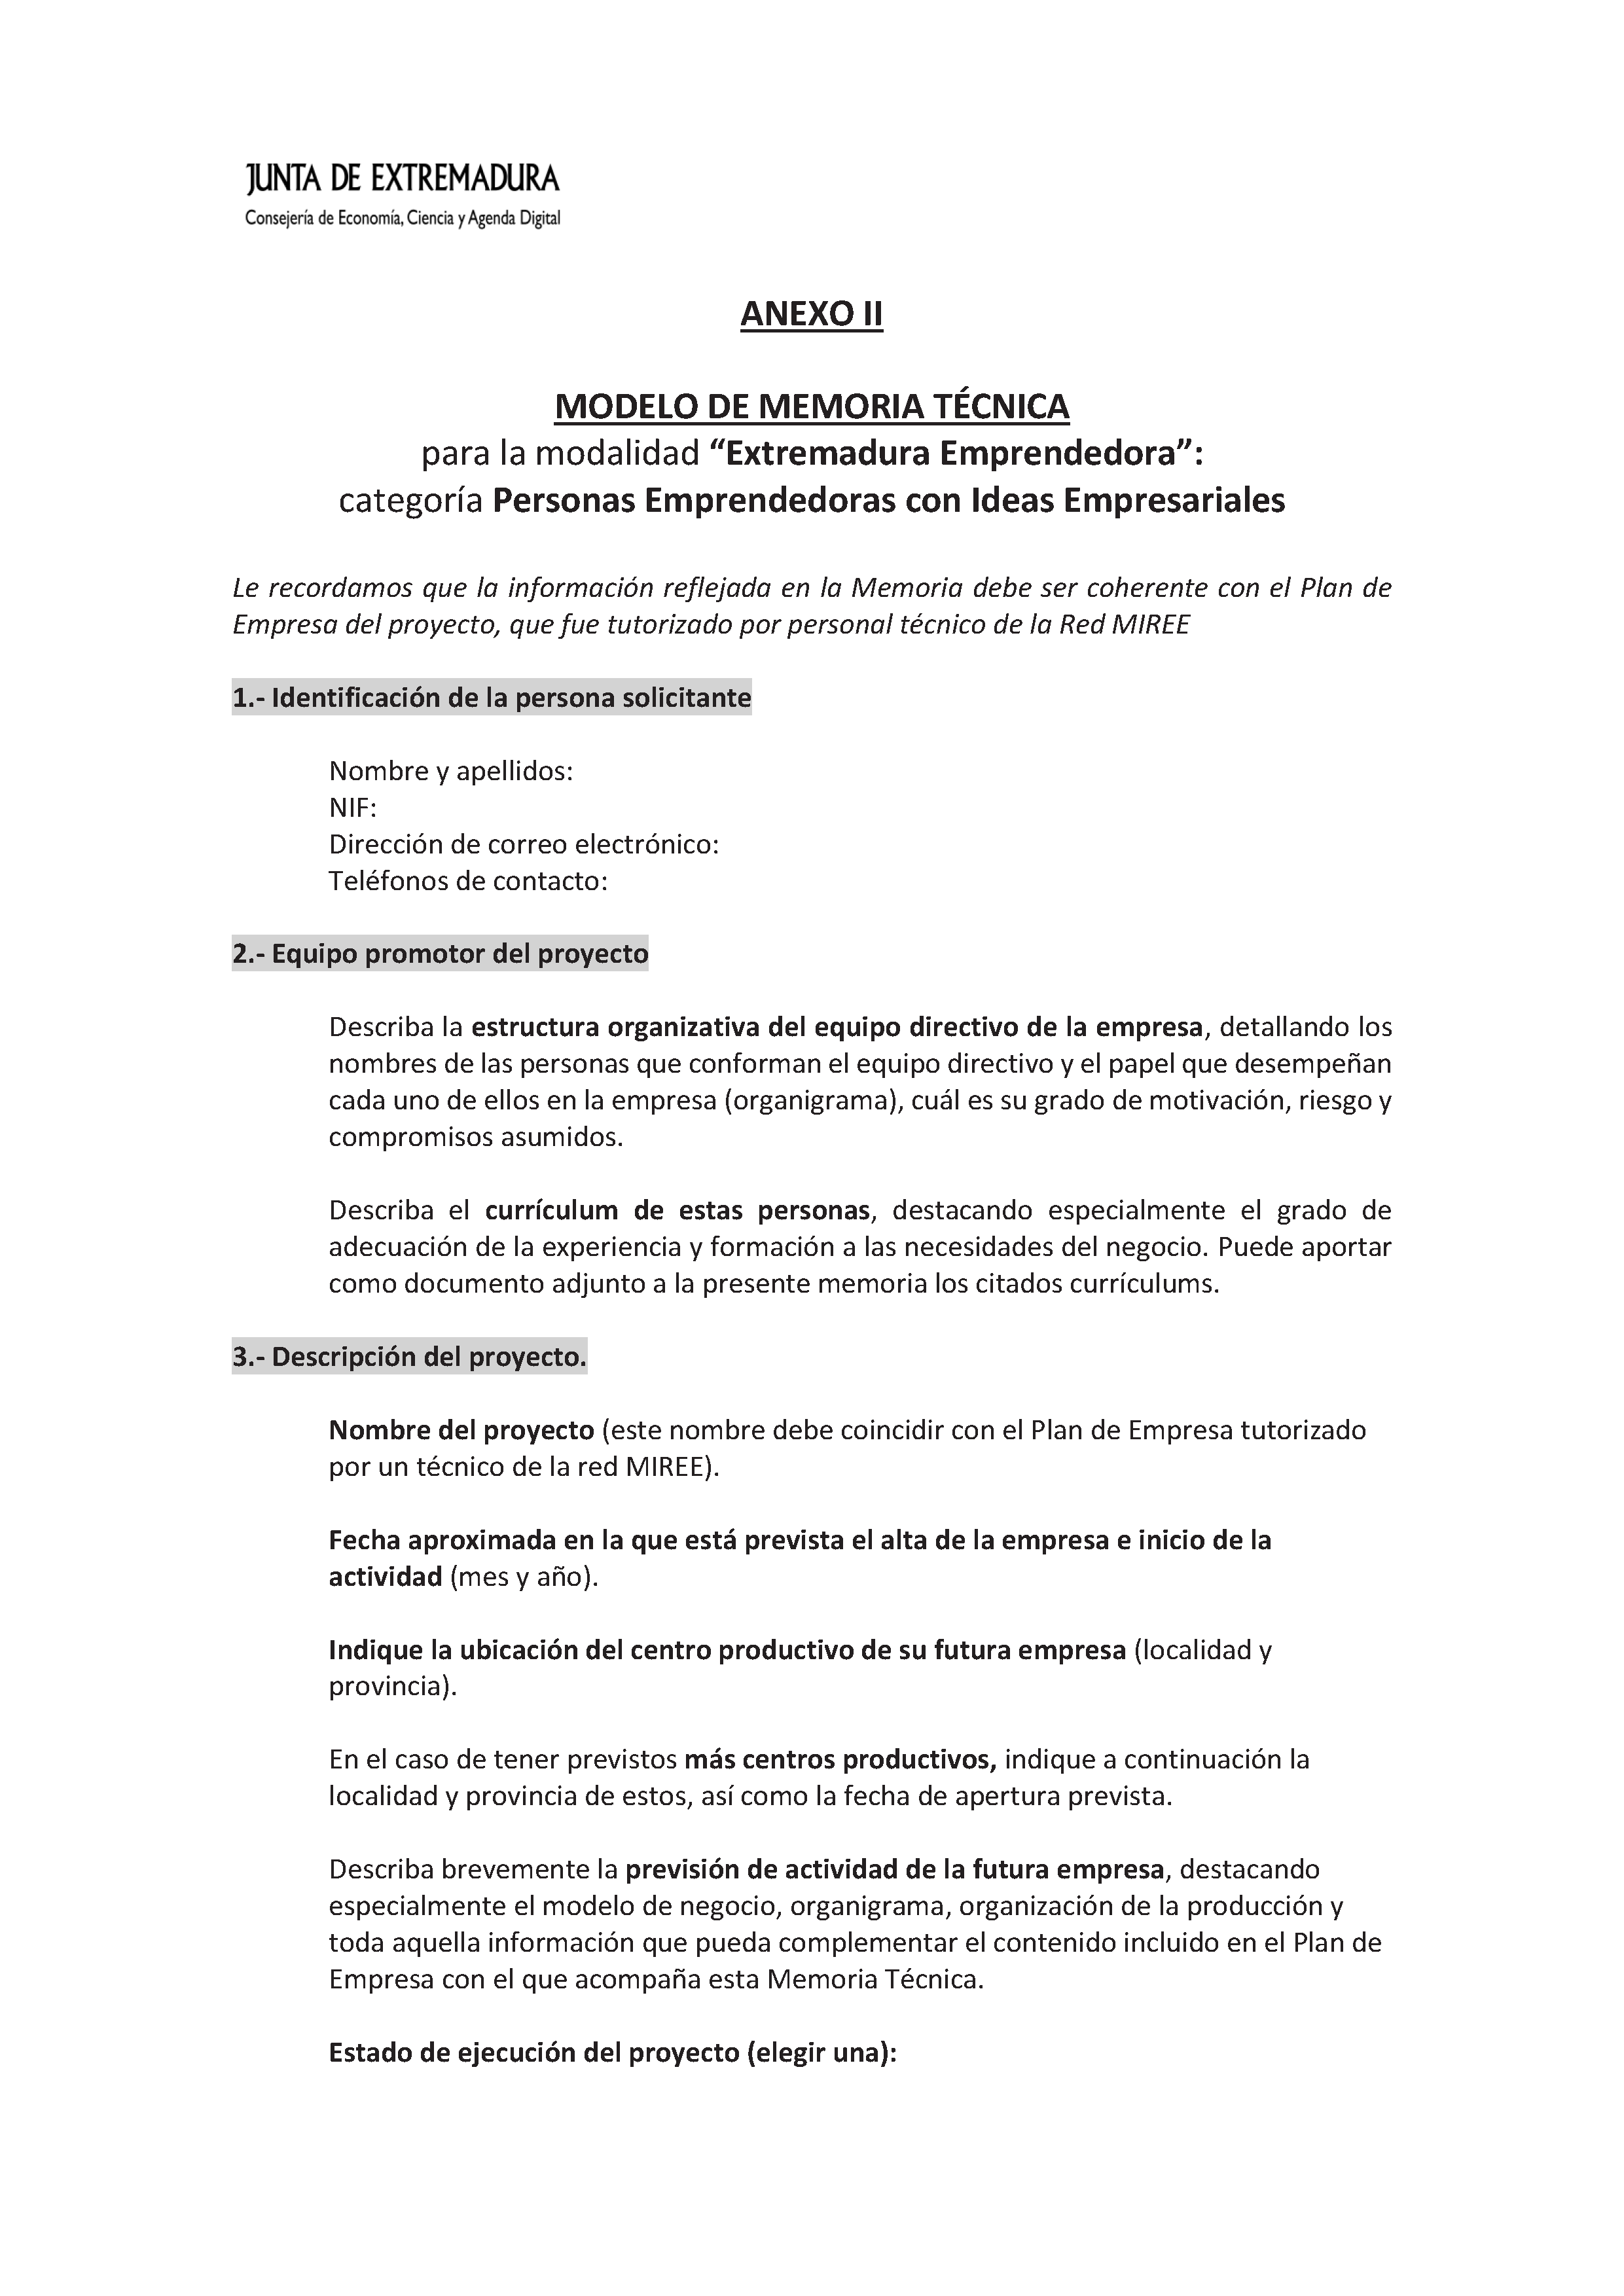 ANEXO II MODELO DE MEMORIA TECNICA Pag 1